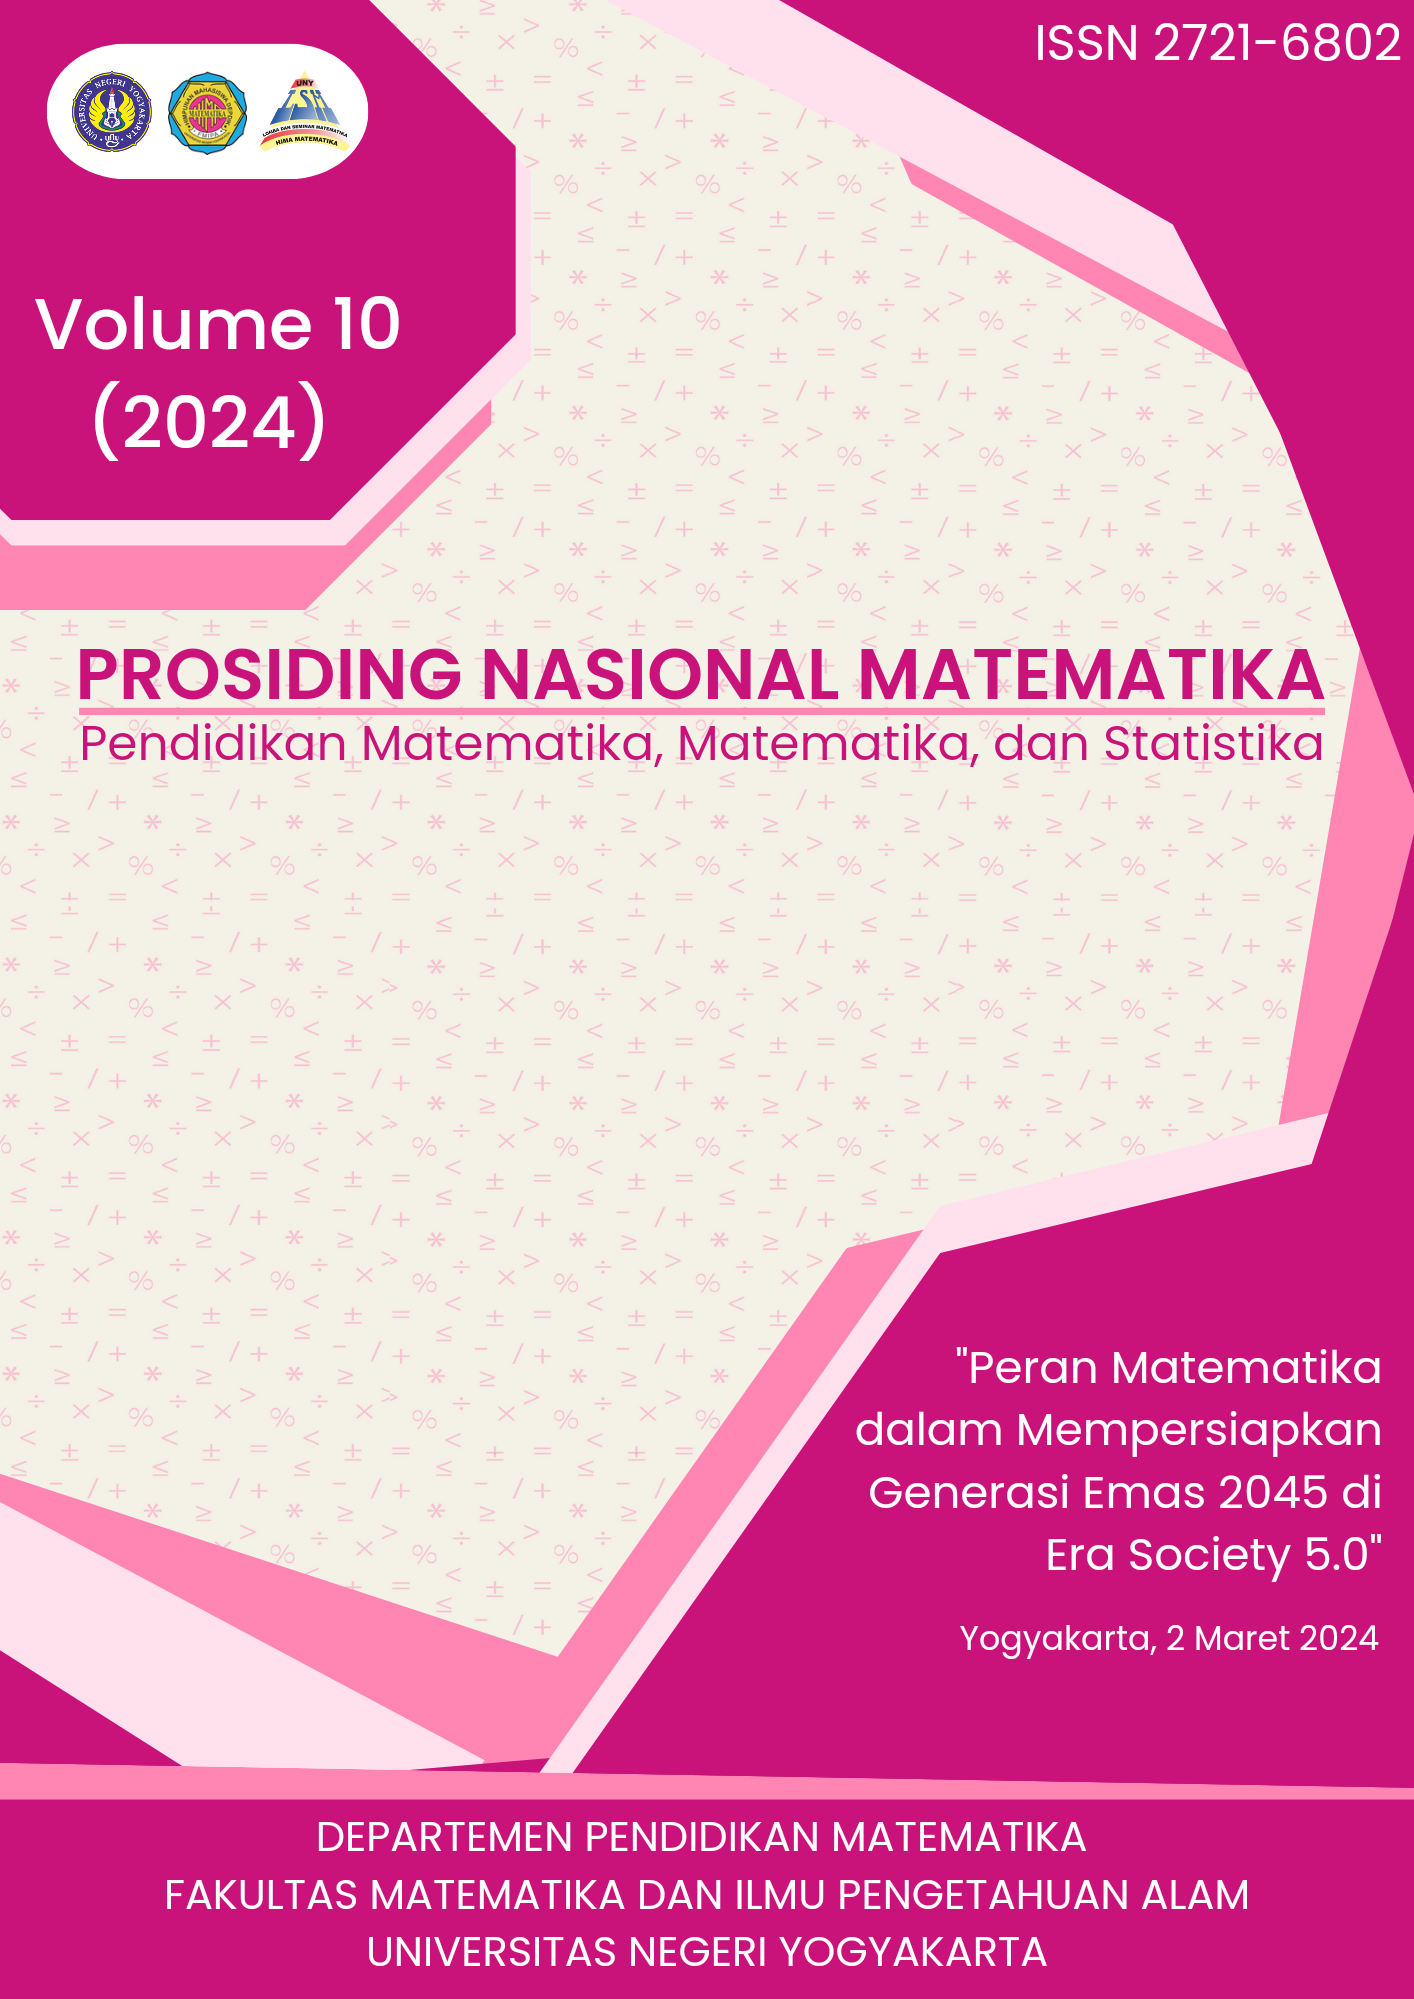 					View Vol. 10 (2024): Seminar Nasional Pendidikan Matematika dan Matematika
				